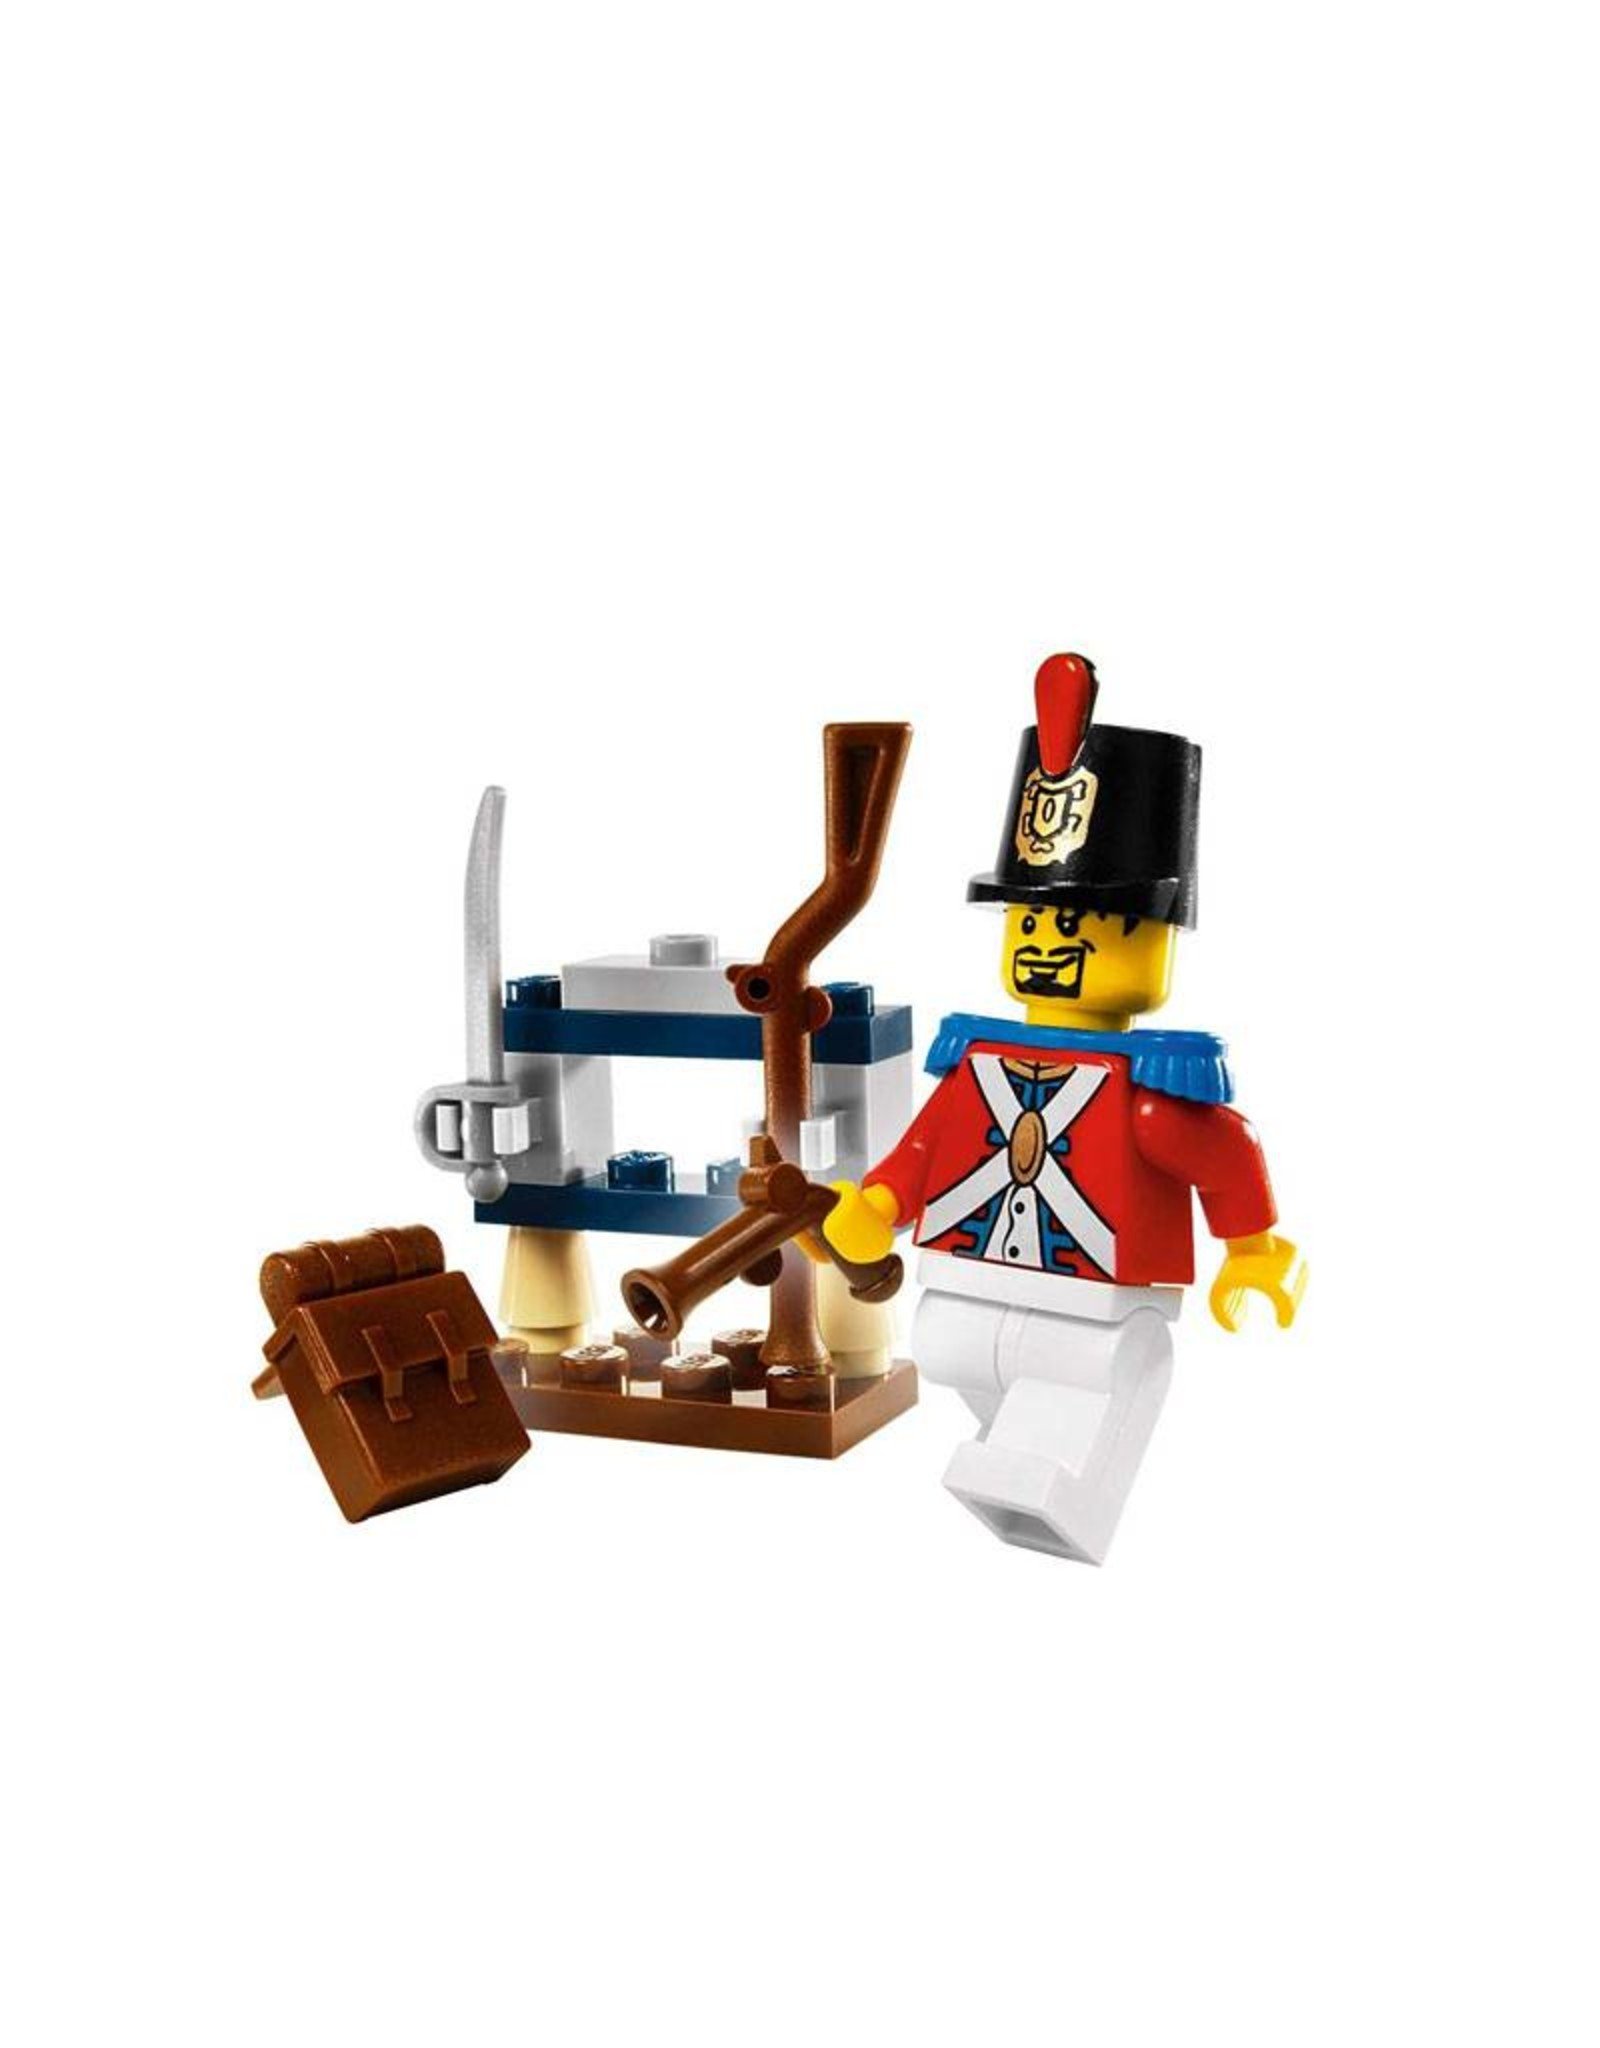 LEGO LEGO 8396 Soldier's Arsenal PIRATES